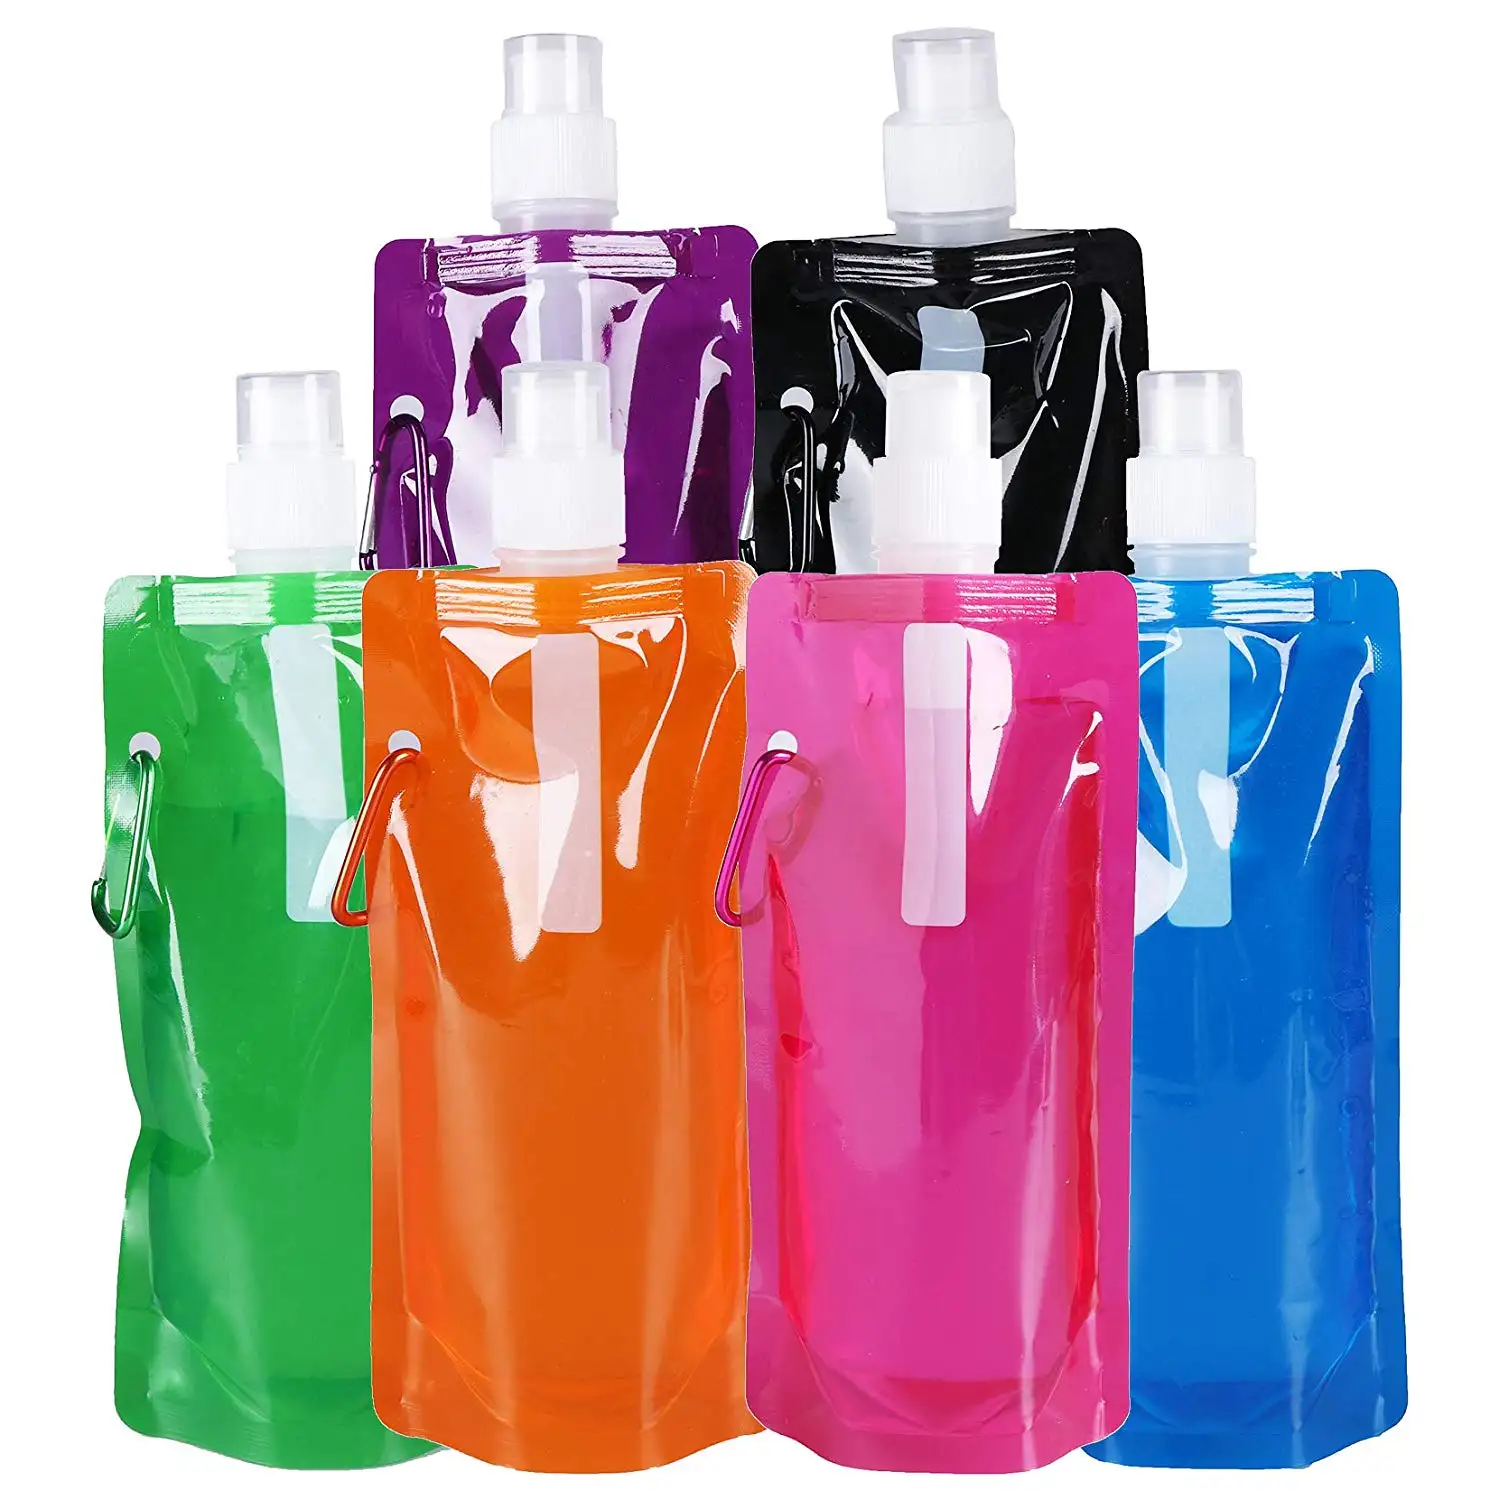 زجاجات مياه قابلة للطي حقيبة مياه قابلة للطي زجاجة مياه قابلة للطي خالية من BPA خالية من الدهون رياضية مع مشبك للسفر صنبور مياه